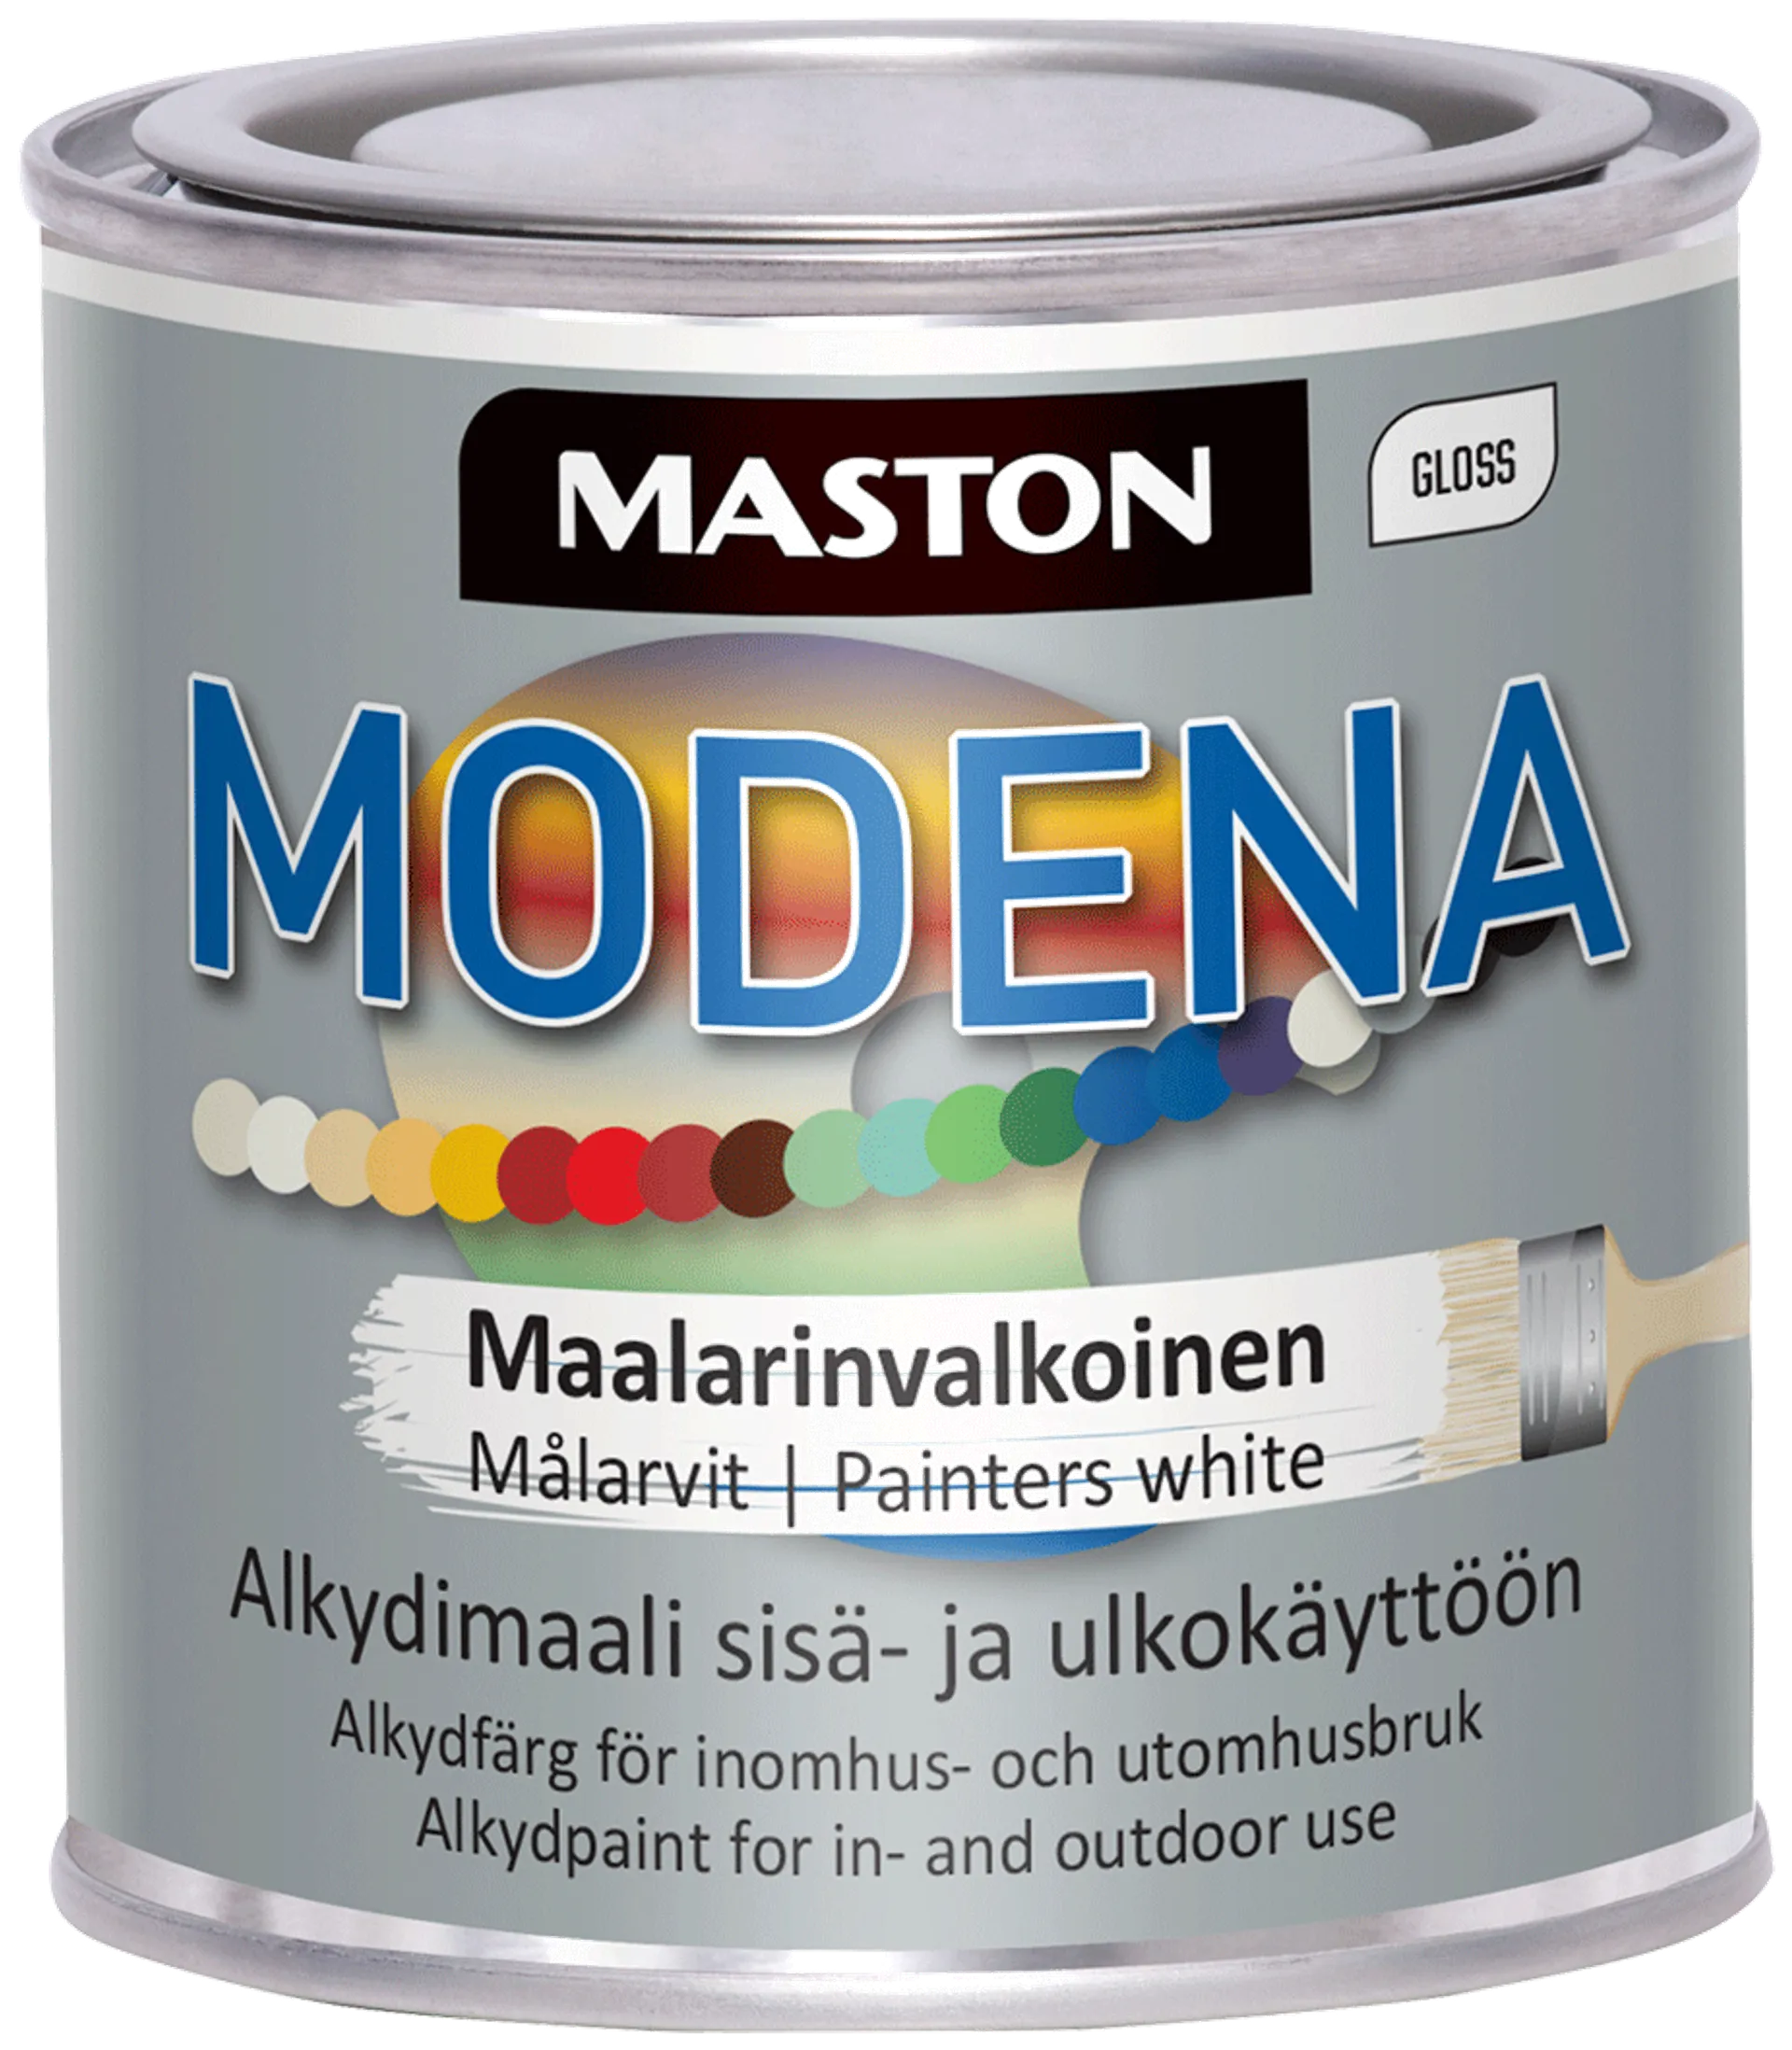 Maston maali Modena maalarinvalkoinen 250 ml - 1